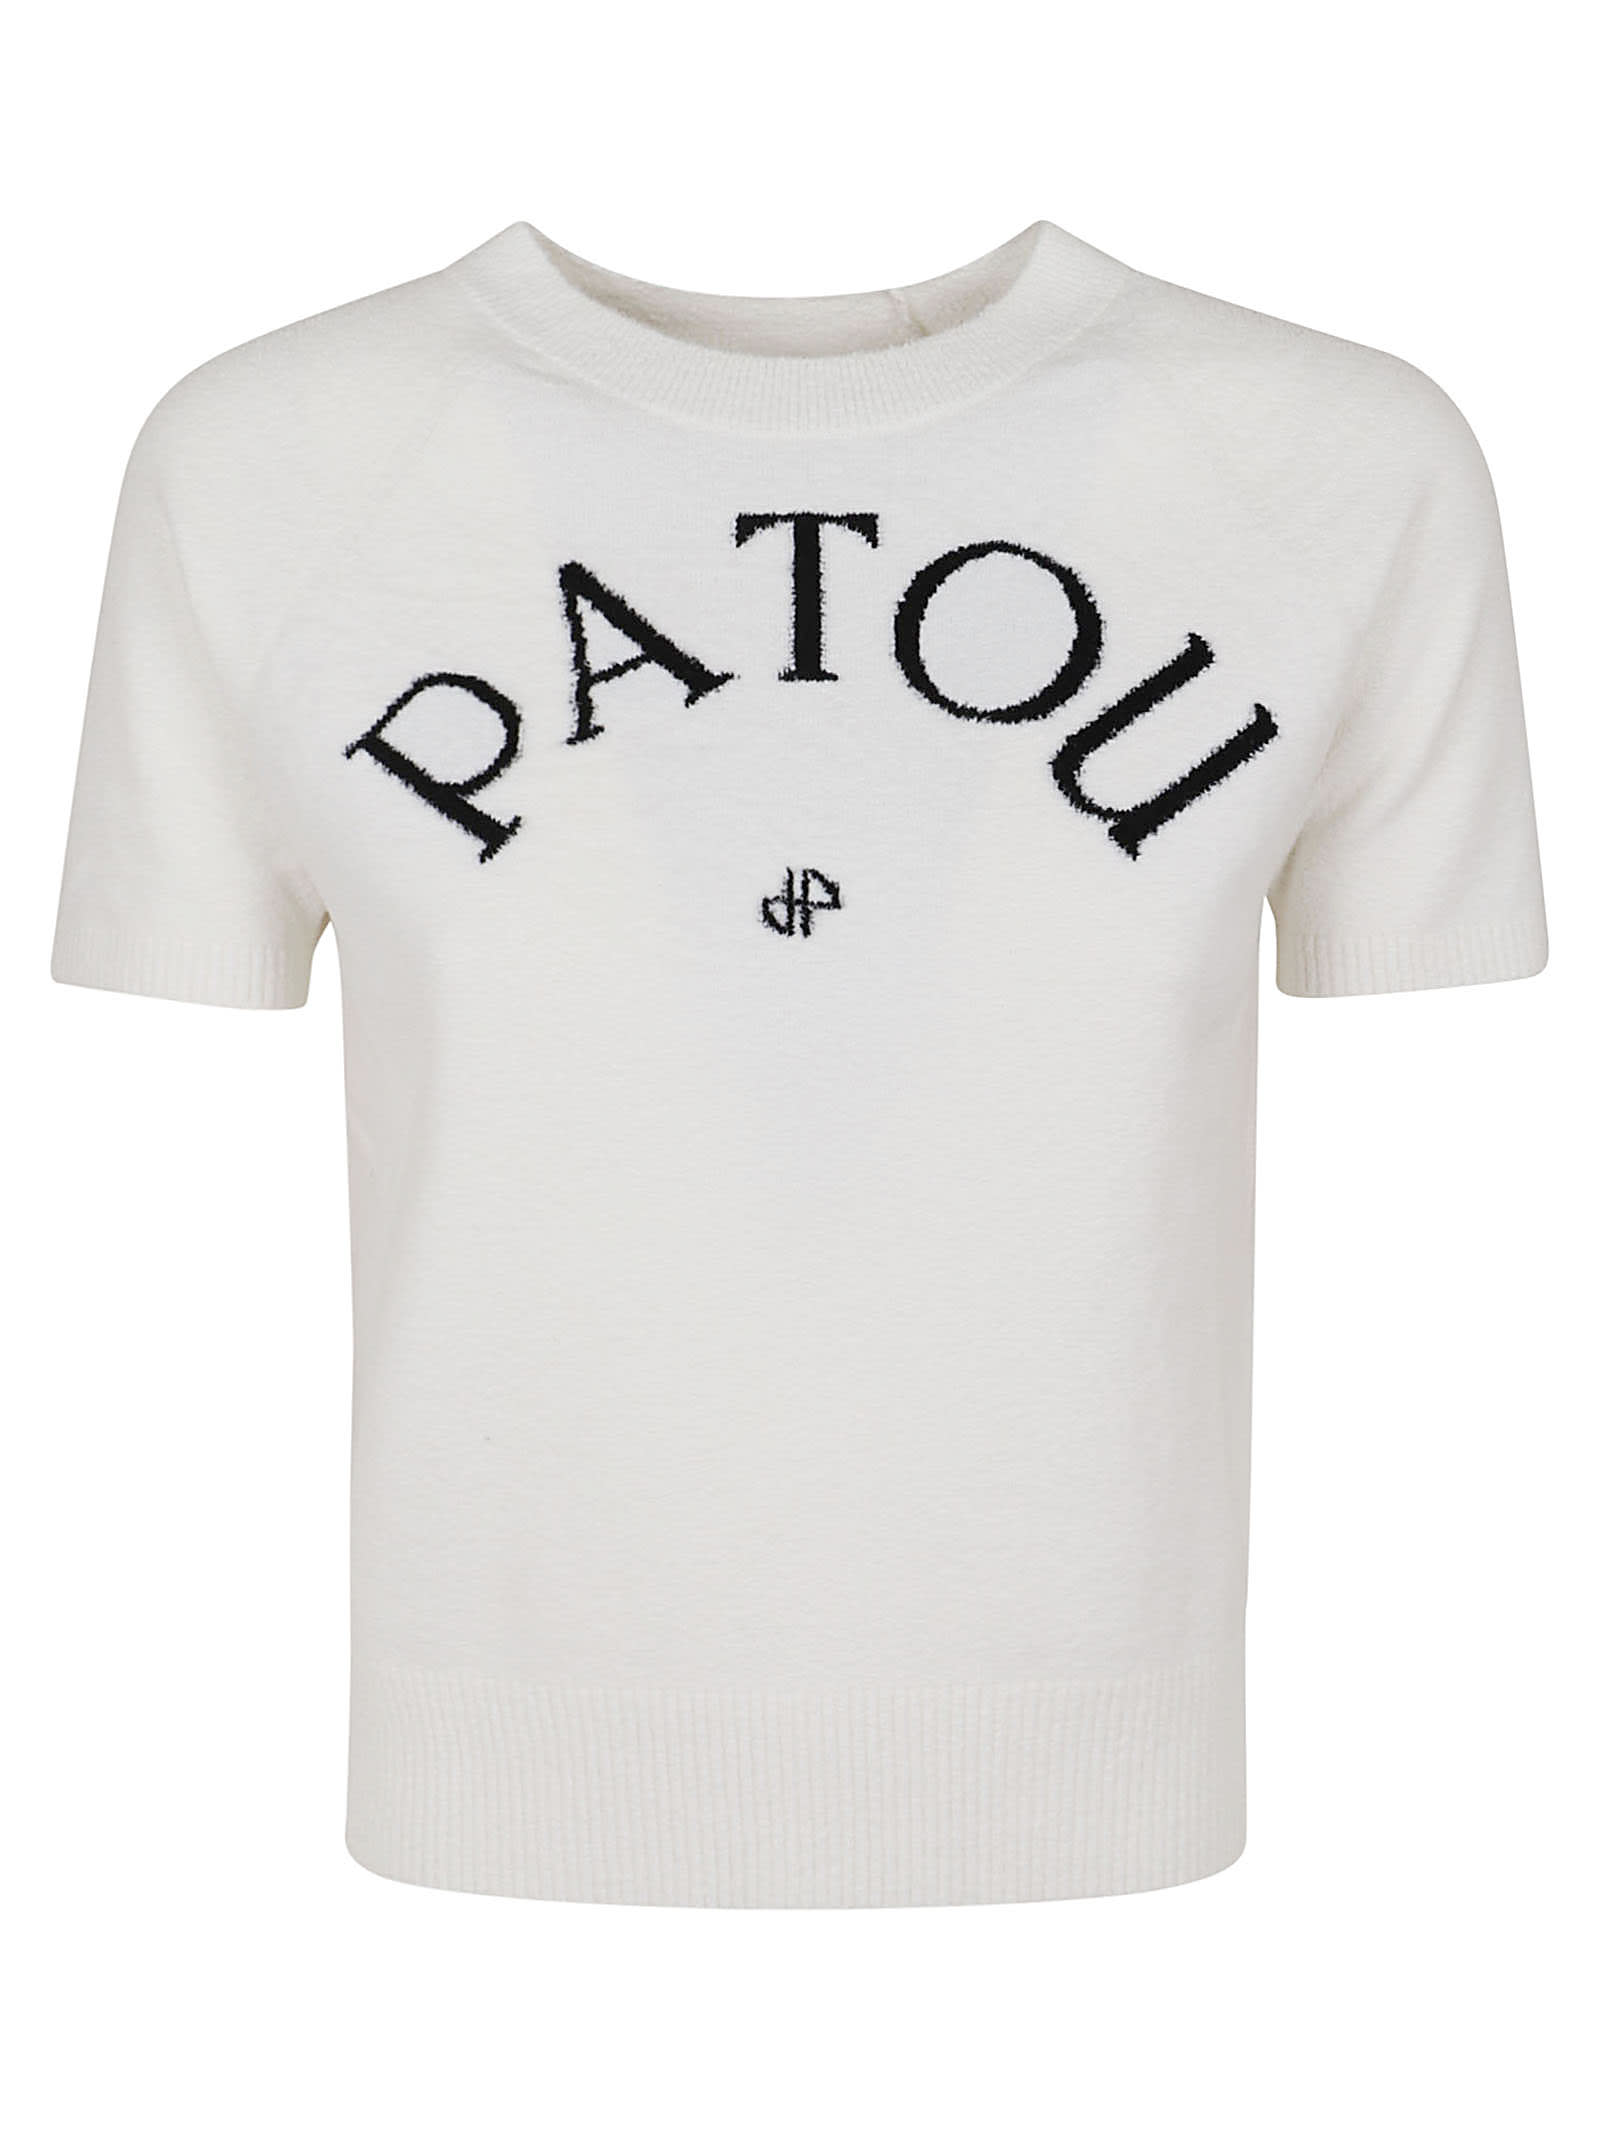 Shop Patou Jacquard Terry Knit In W White